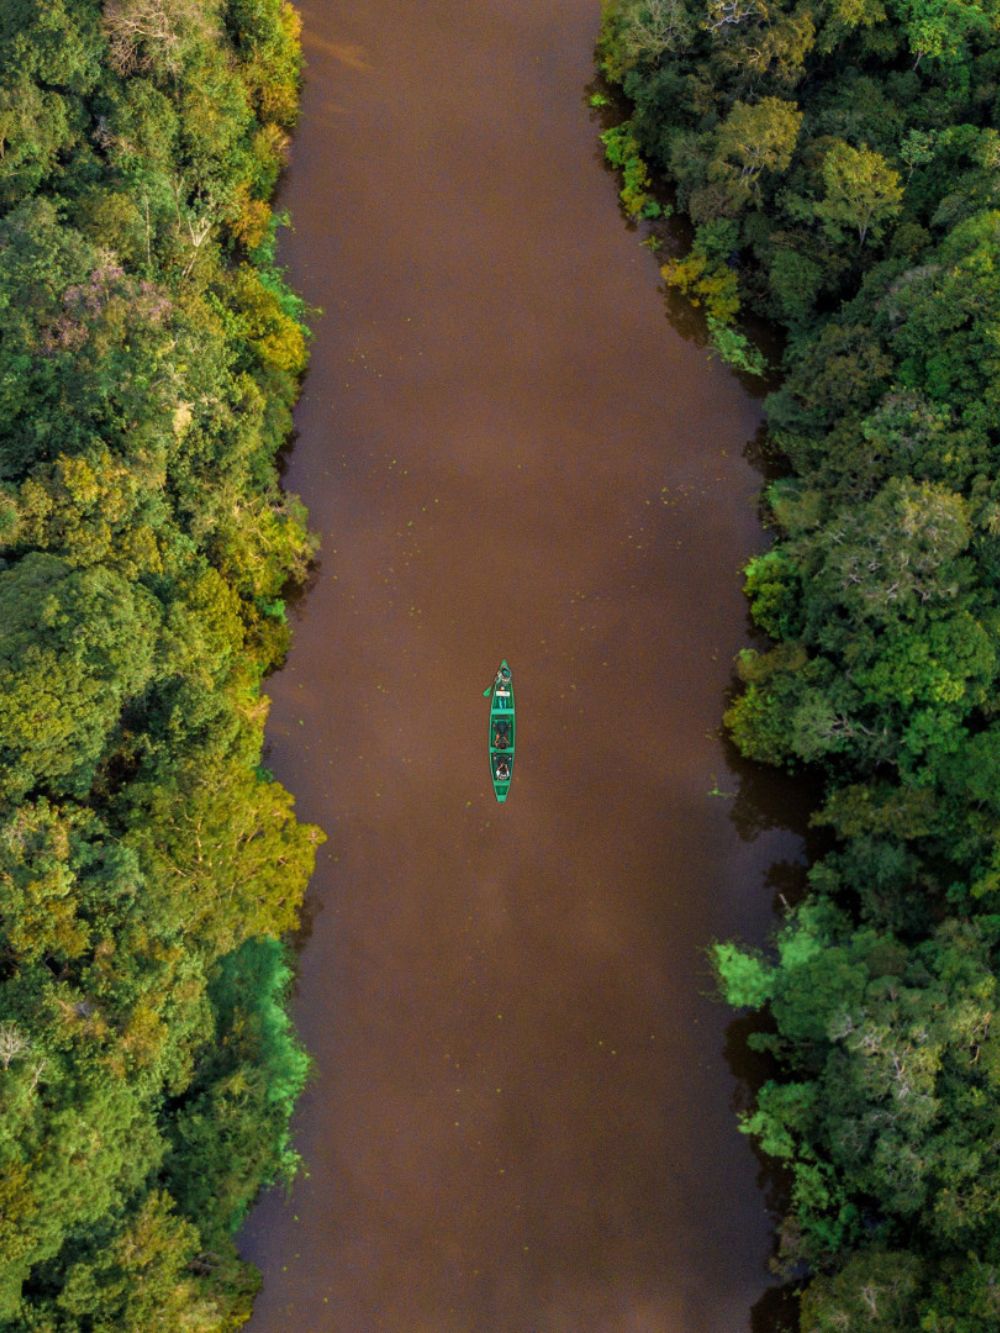 Amazon jungle survival tour